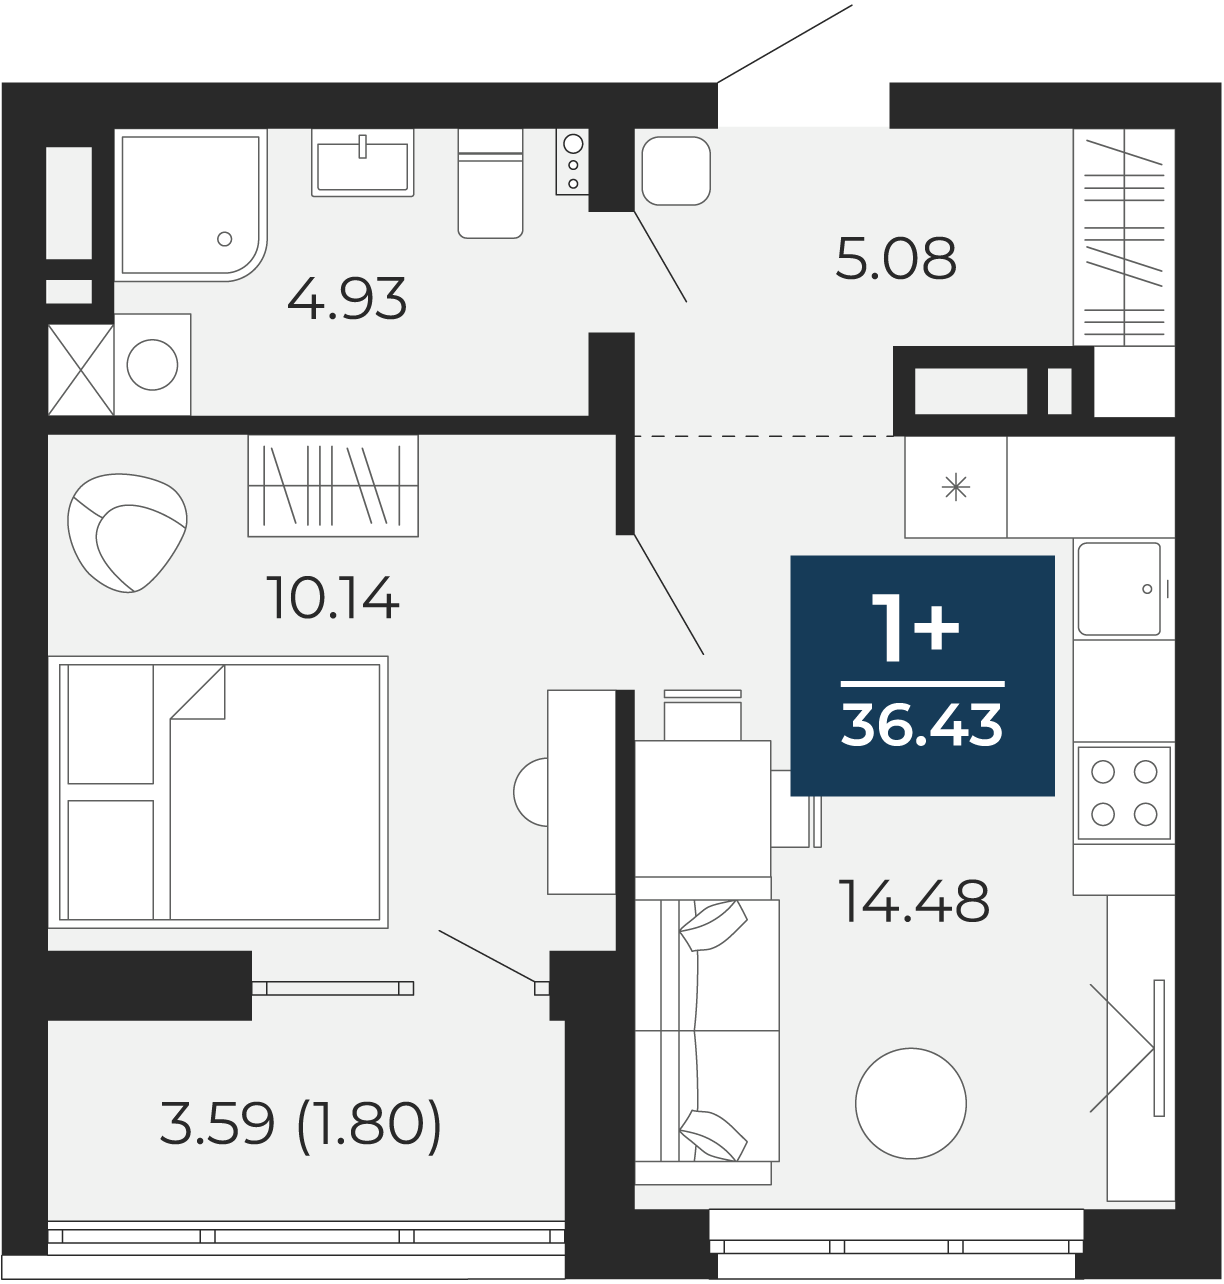 Квартира № 236, 1-комнатная, 36.43 кв. м, 11 этаж